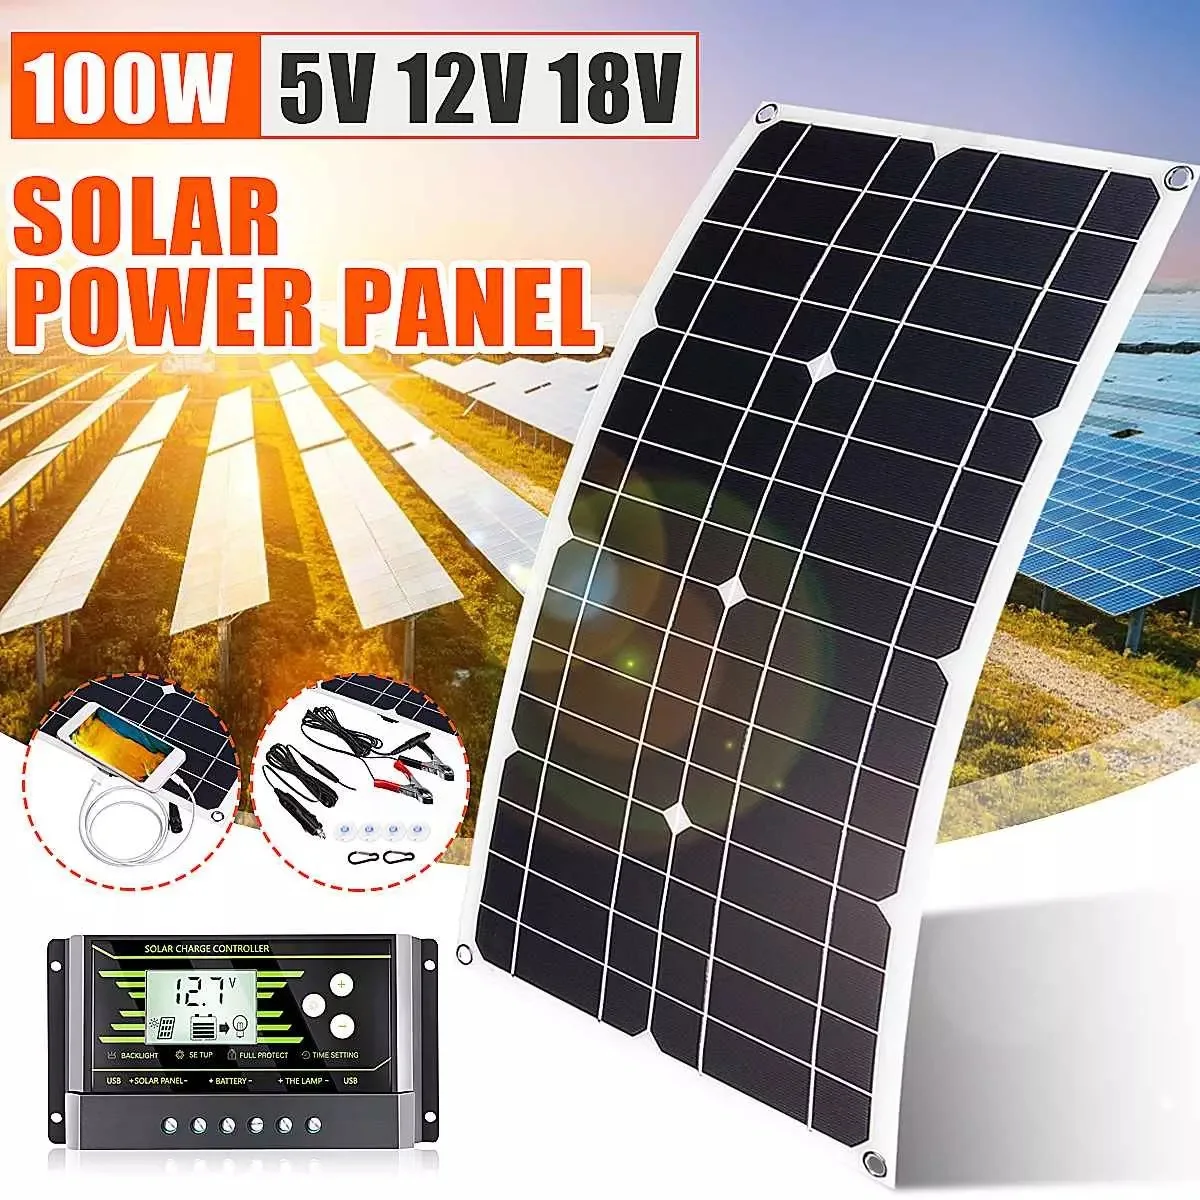 Panel Tenaga Surya / Solar Panel 100W Kit Lengkap 12V 18V dengan Pengontrol USB Sel Surya untuk Mobil Kapal Pesiar Perahu RV Pengisi Daya Baterai Ponsel Moblie - 4